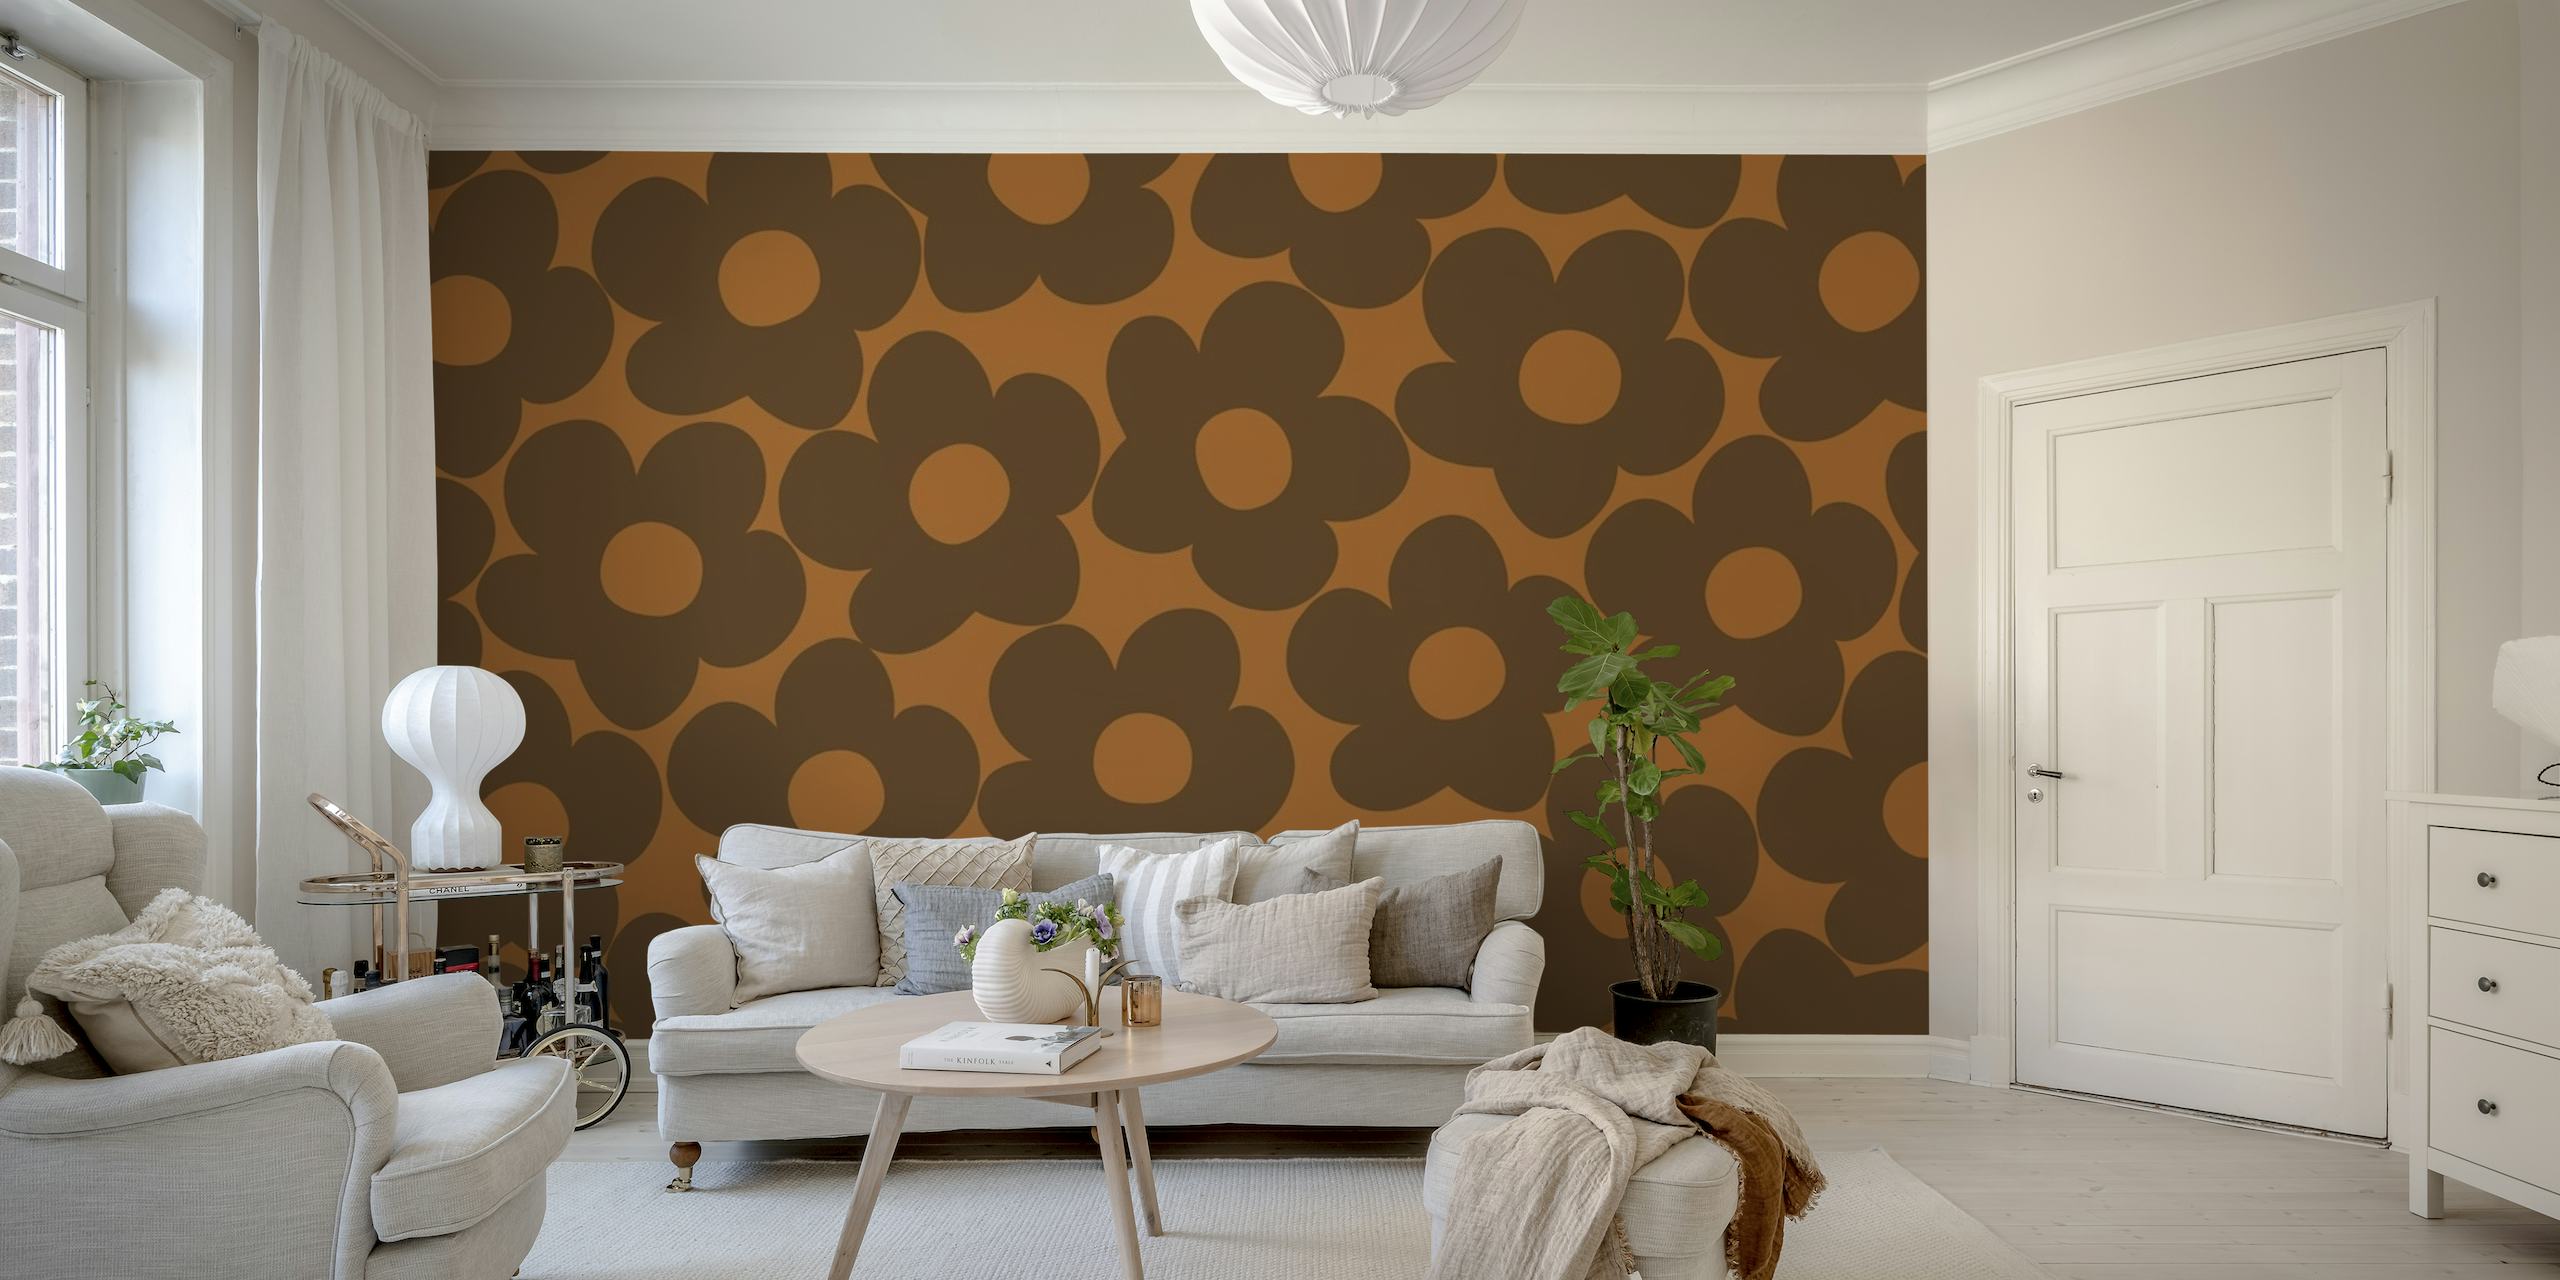 Fotomural vinílico de parede estilo vintage com fundo marrom e padrões retrô de margaridas